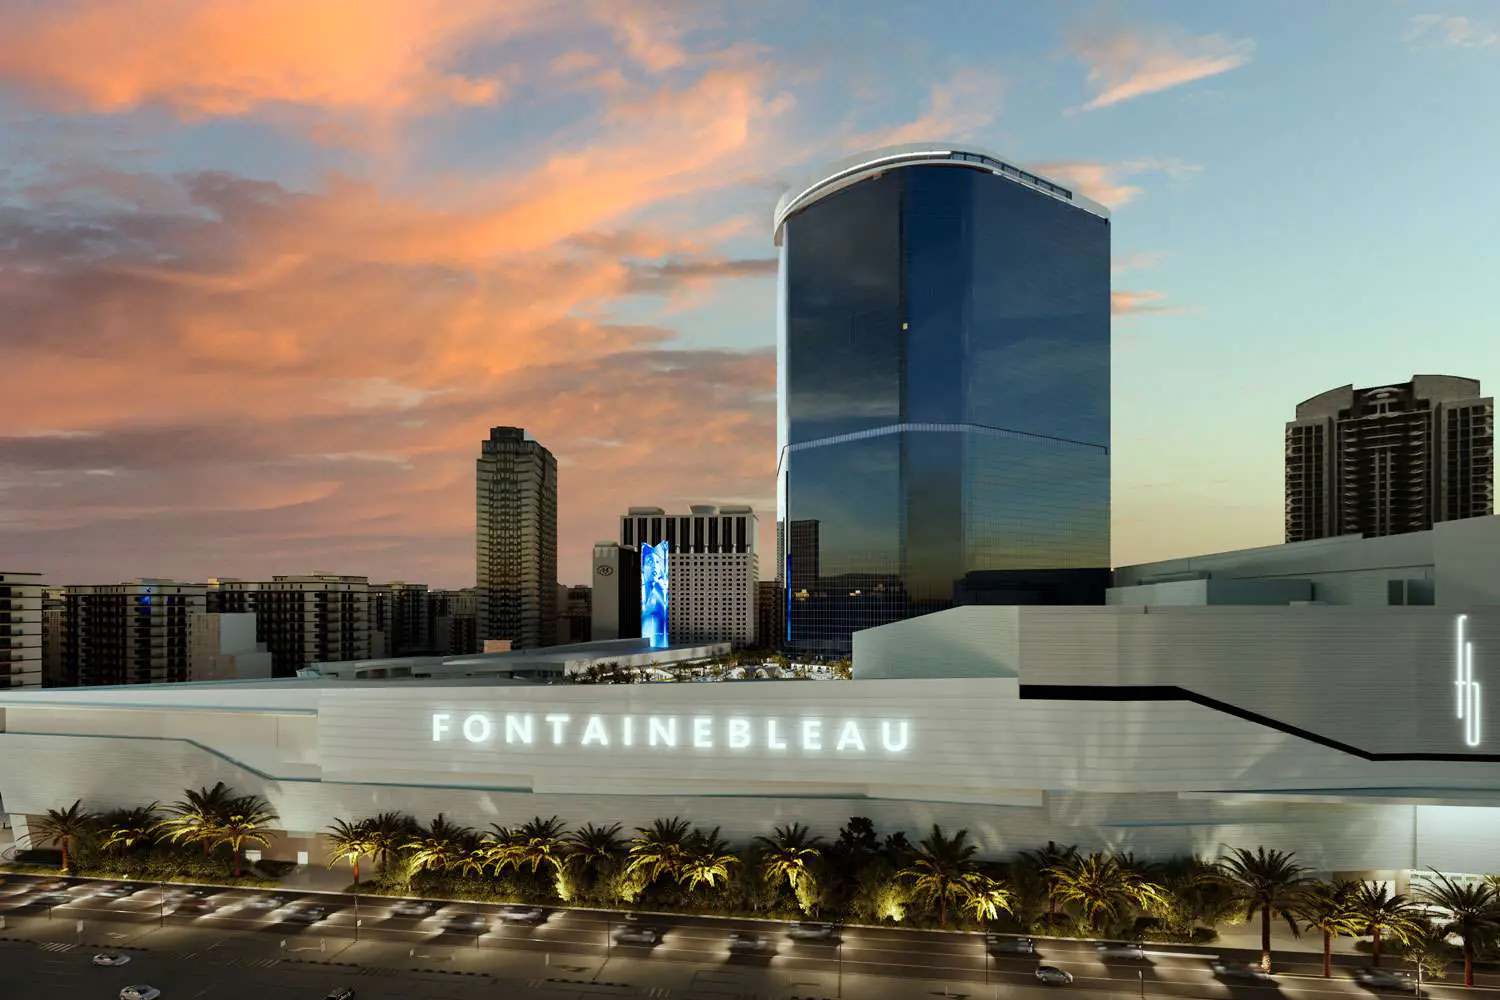 Fontainebleau casino